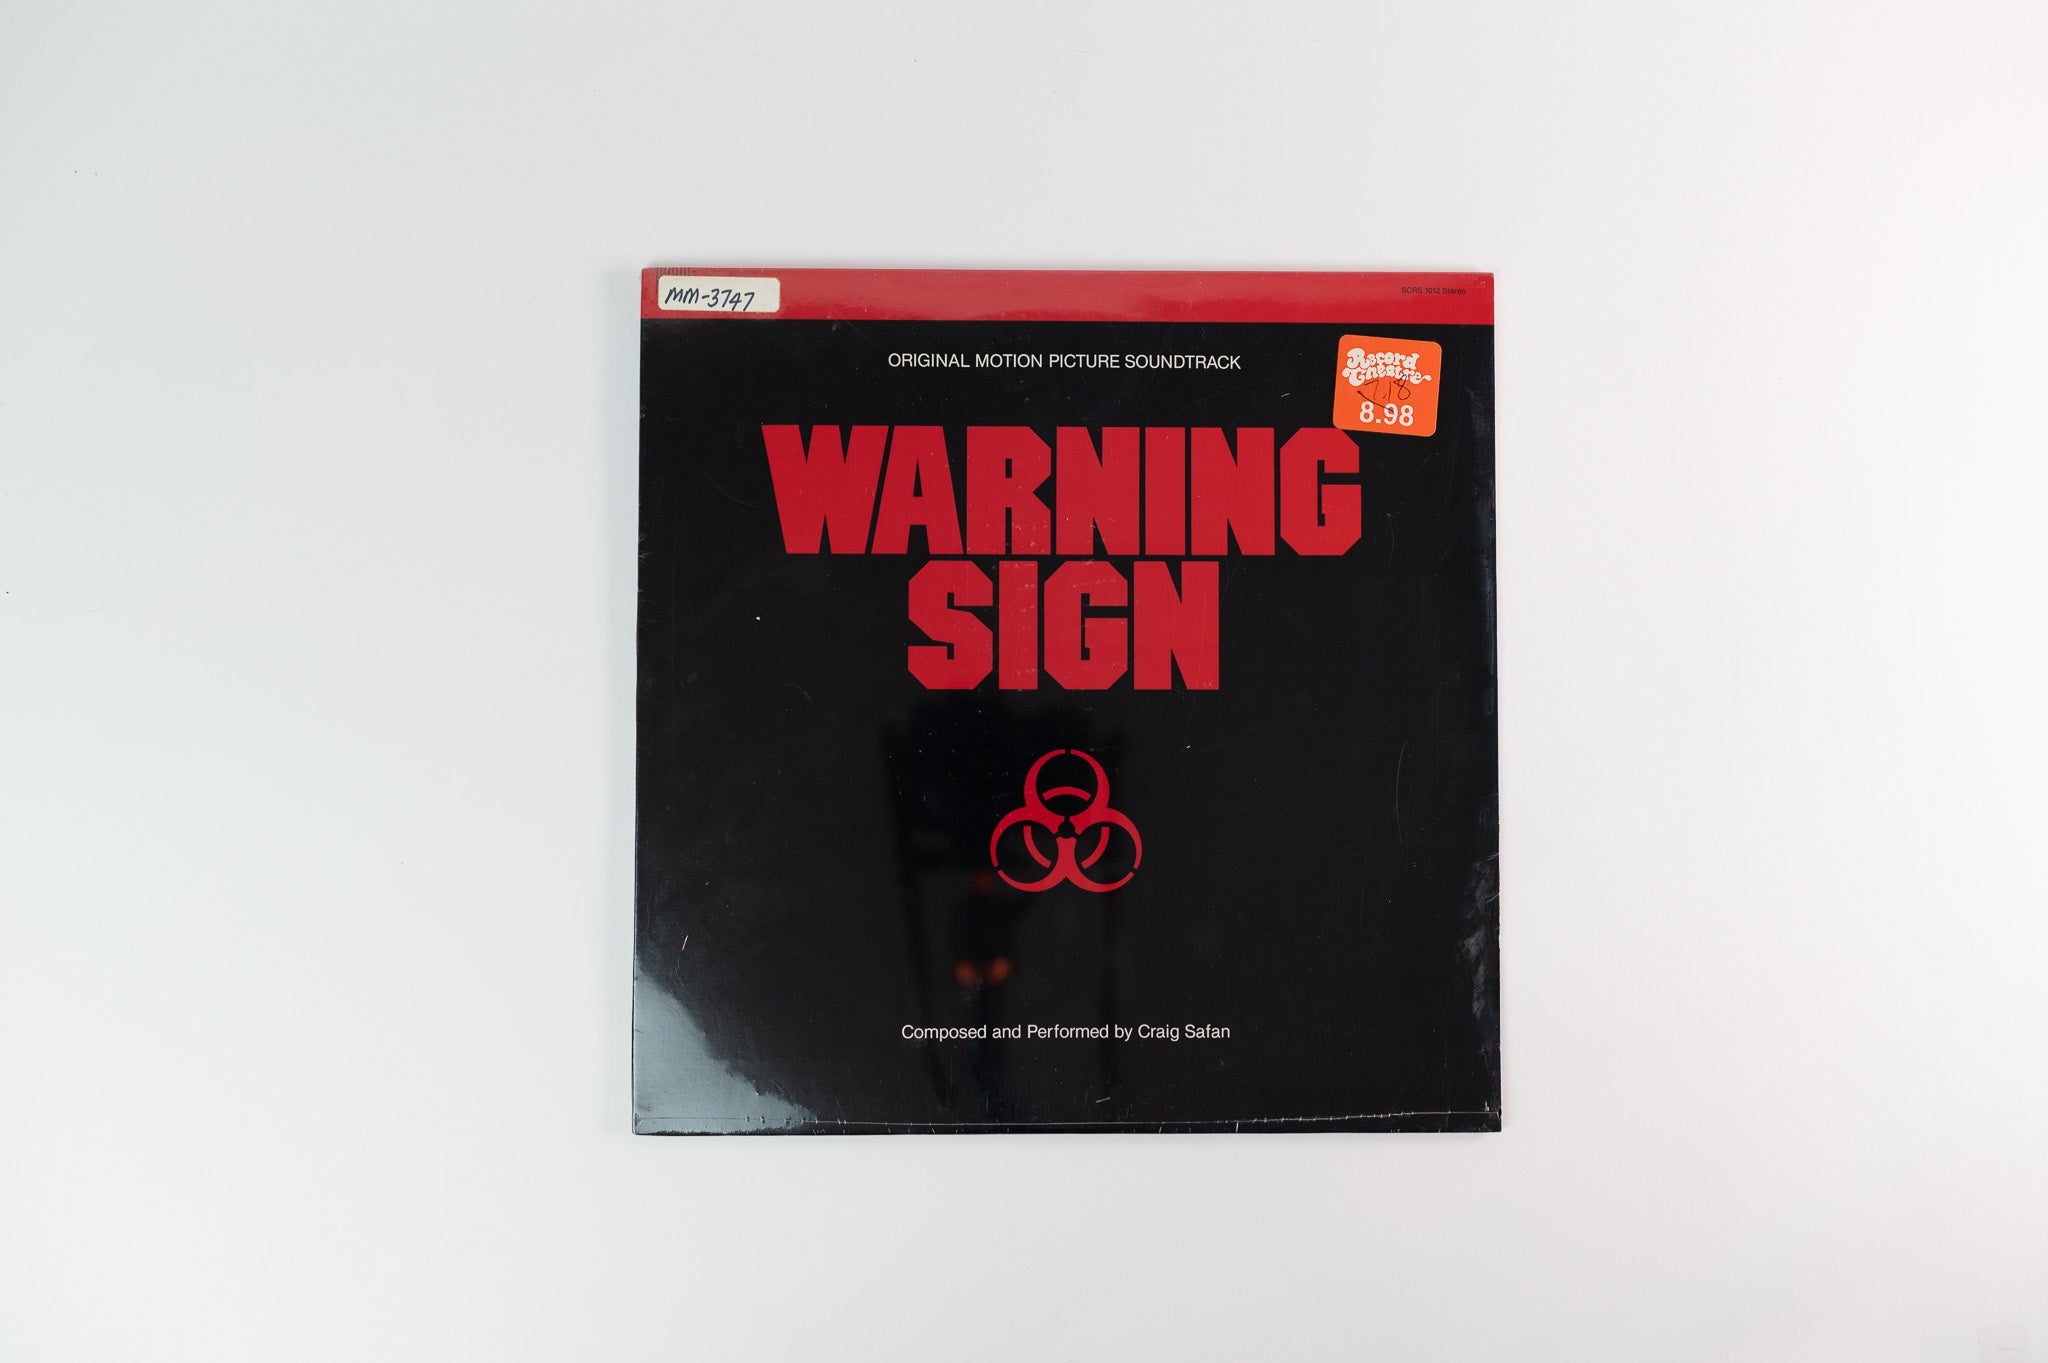 Craig Safan - Warning Sign (Original Soundtrack) on Southern Cross Sealed